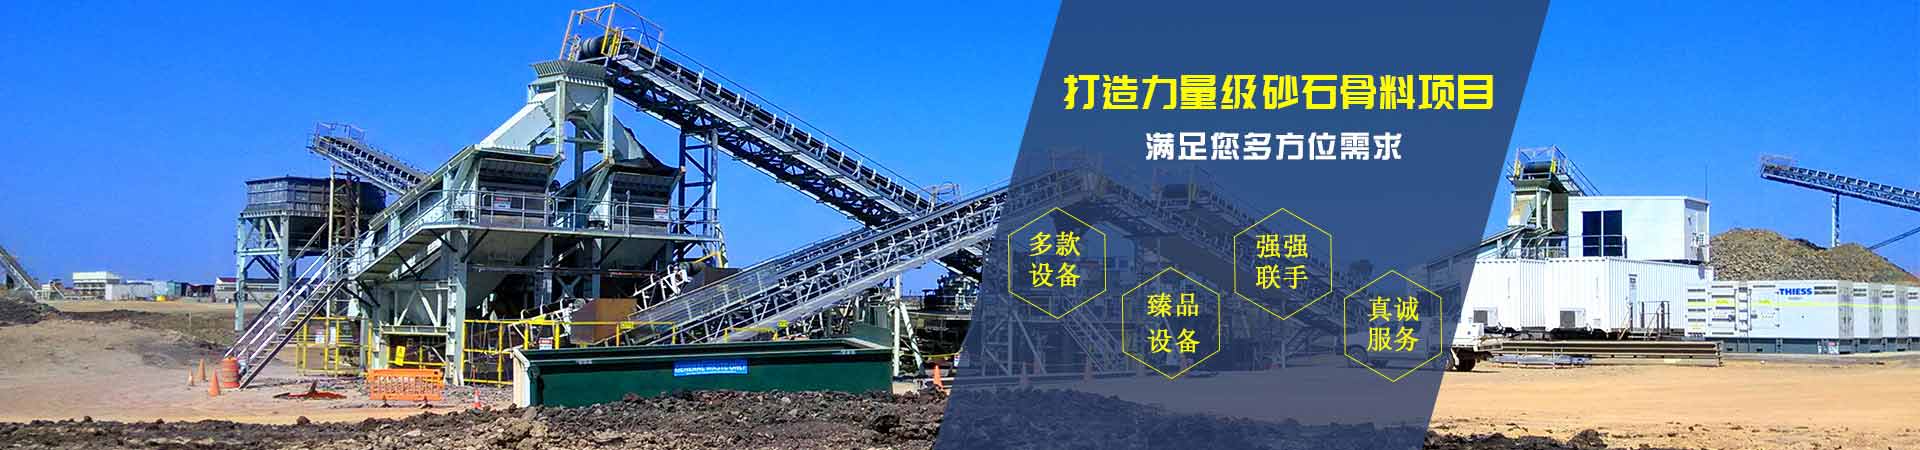 重庆建工干法制砂生产线